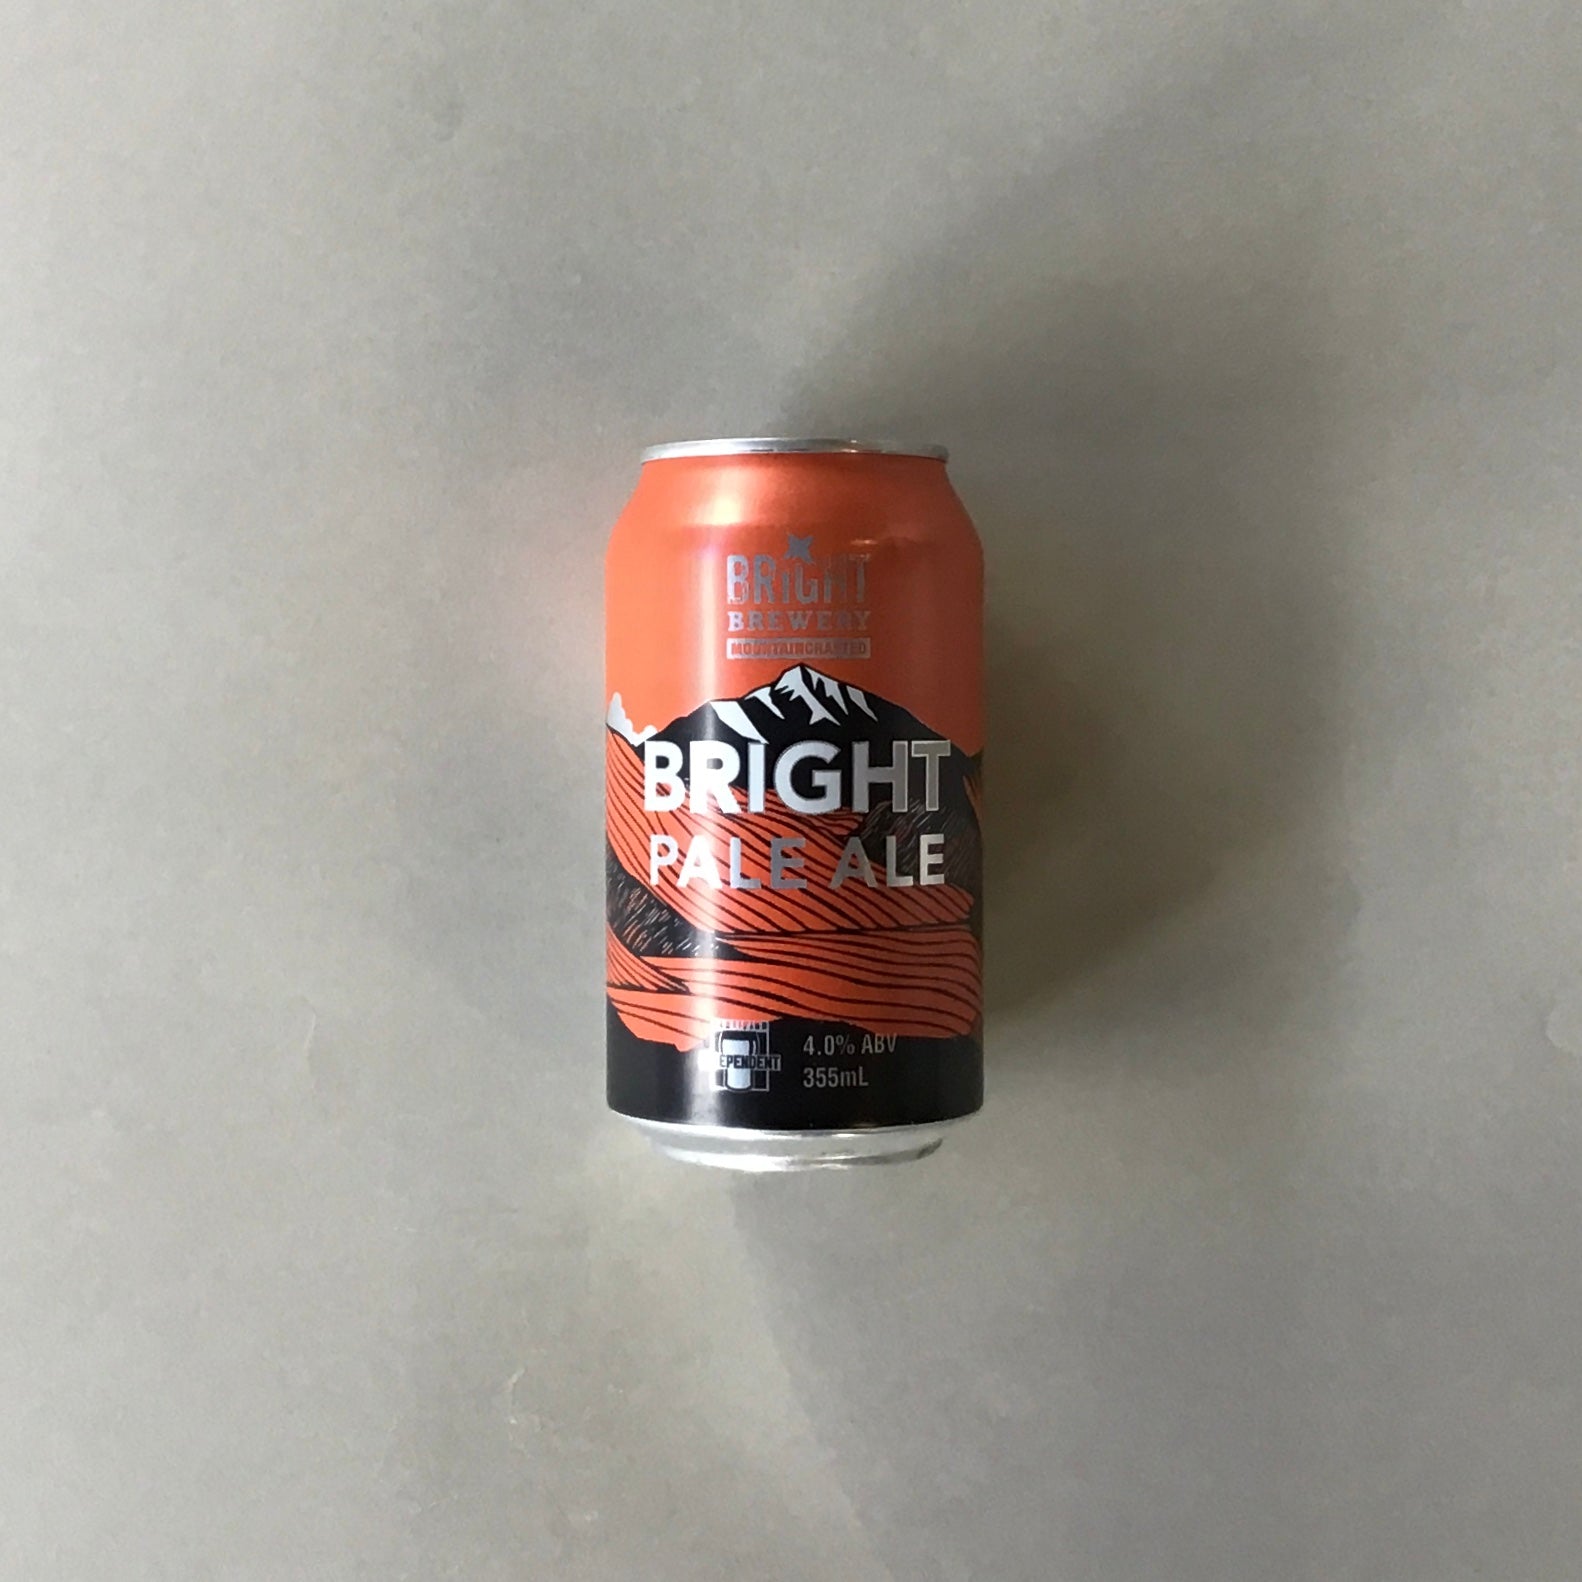 ブライトブリュワリー/ブライトペールエール-Bright Pale Ale Australian Pale Ale 355ml